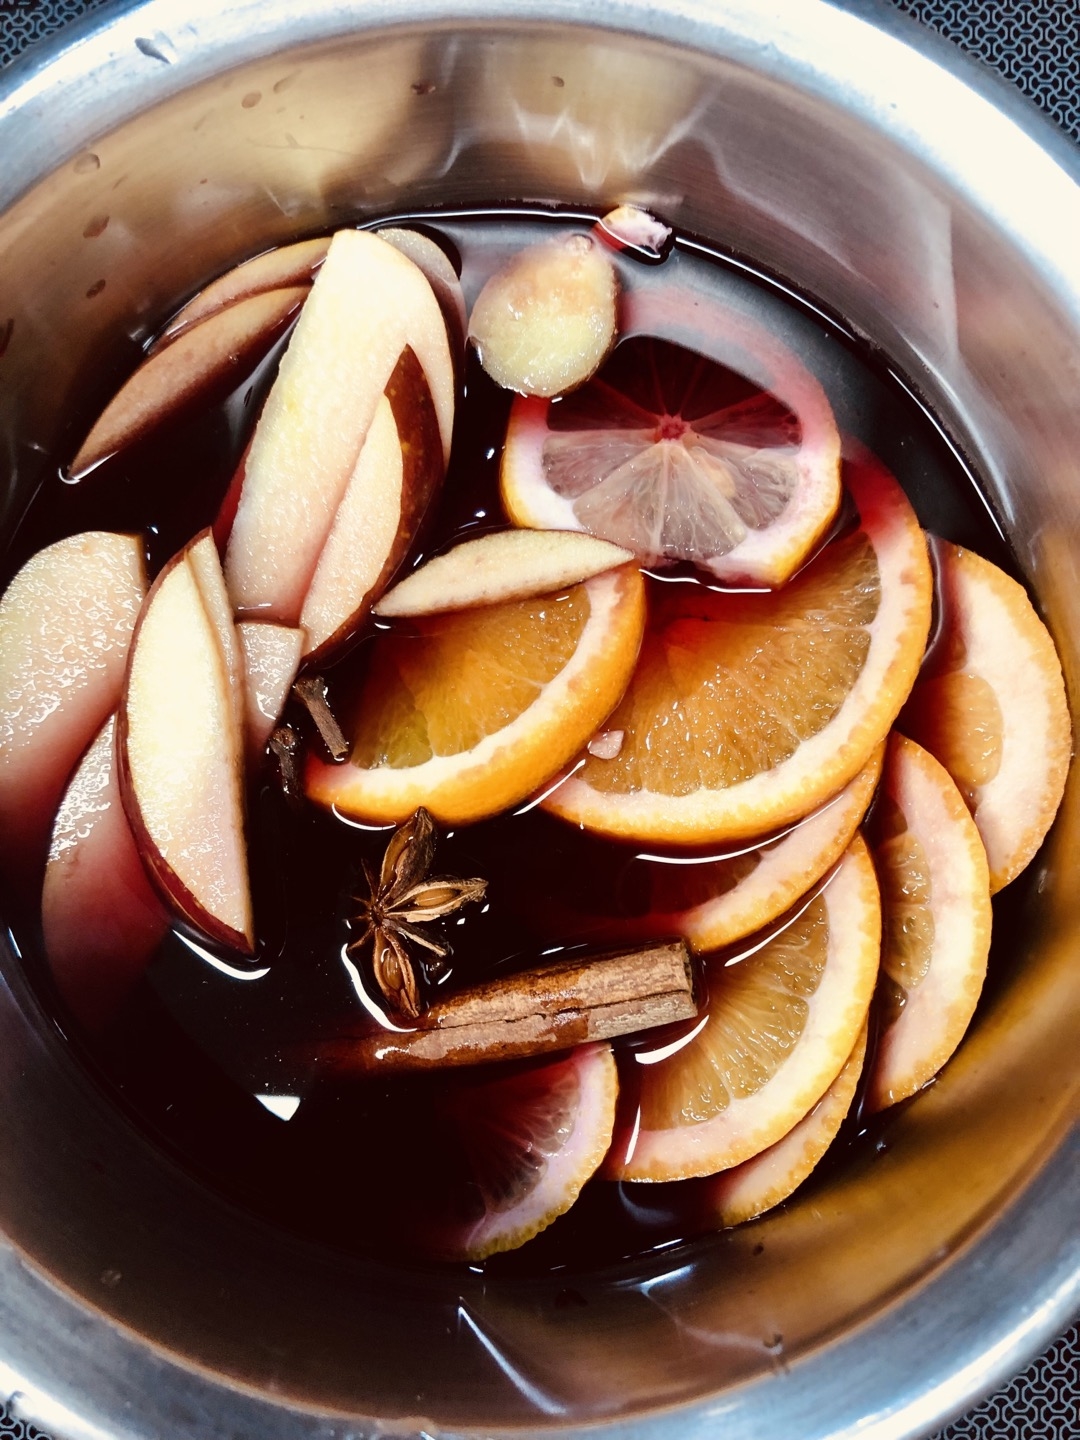 뱅쇼는 레드 와인에 오렌지·레몬 등 과일과 계피·정향 등 향신료를 넣고 끓여 따뜻하게 마시는 음료이다. 